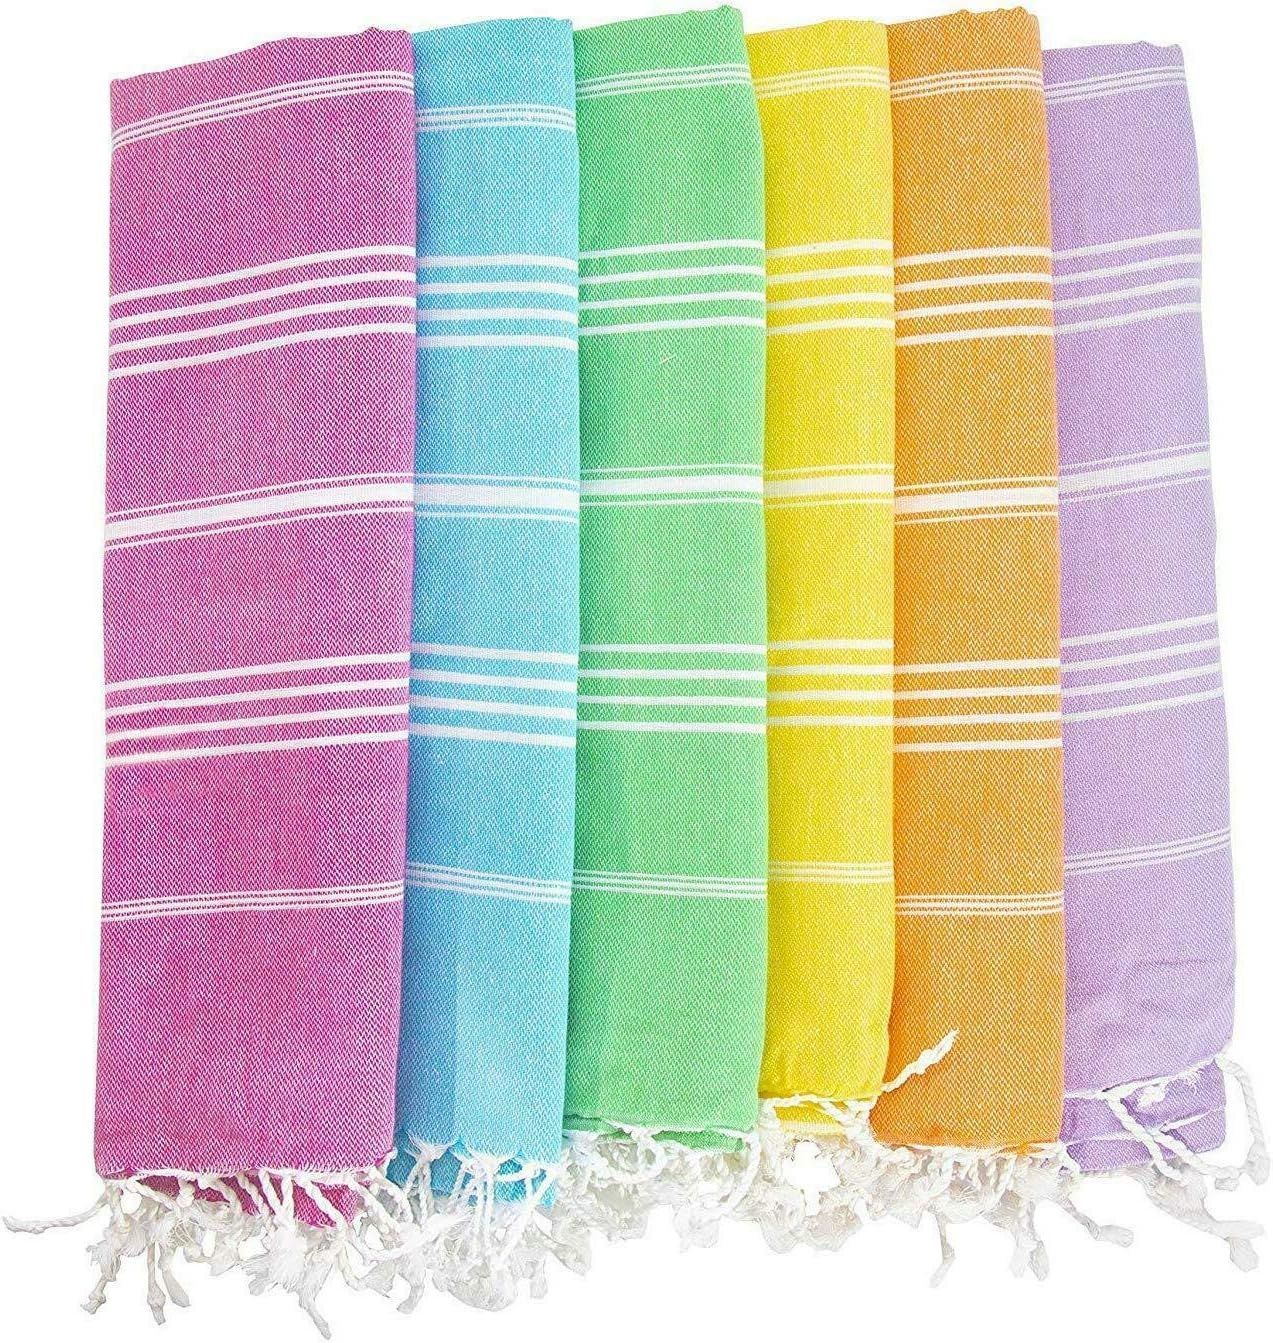 HAVLULAND (Set of 6) 100% Turkish Cotton Beach Towels (71"X39") Prewashed for Soft Feel - Oversized  | Amazon (US)